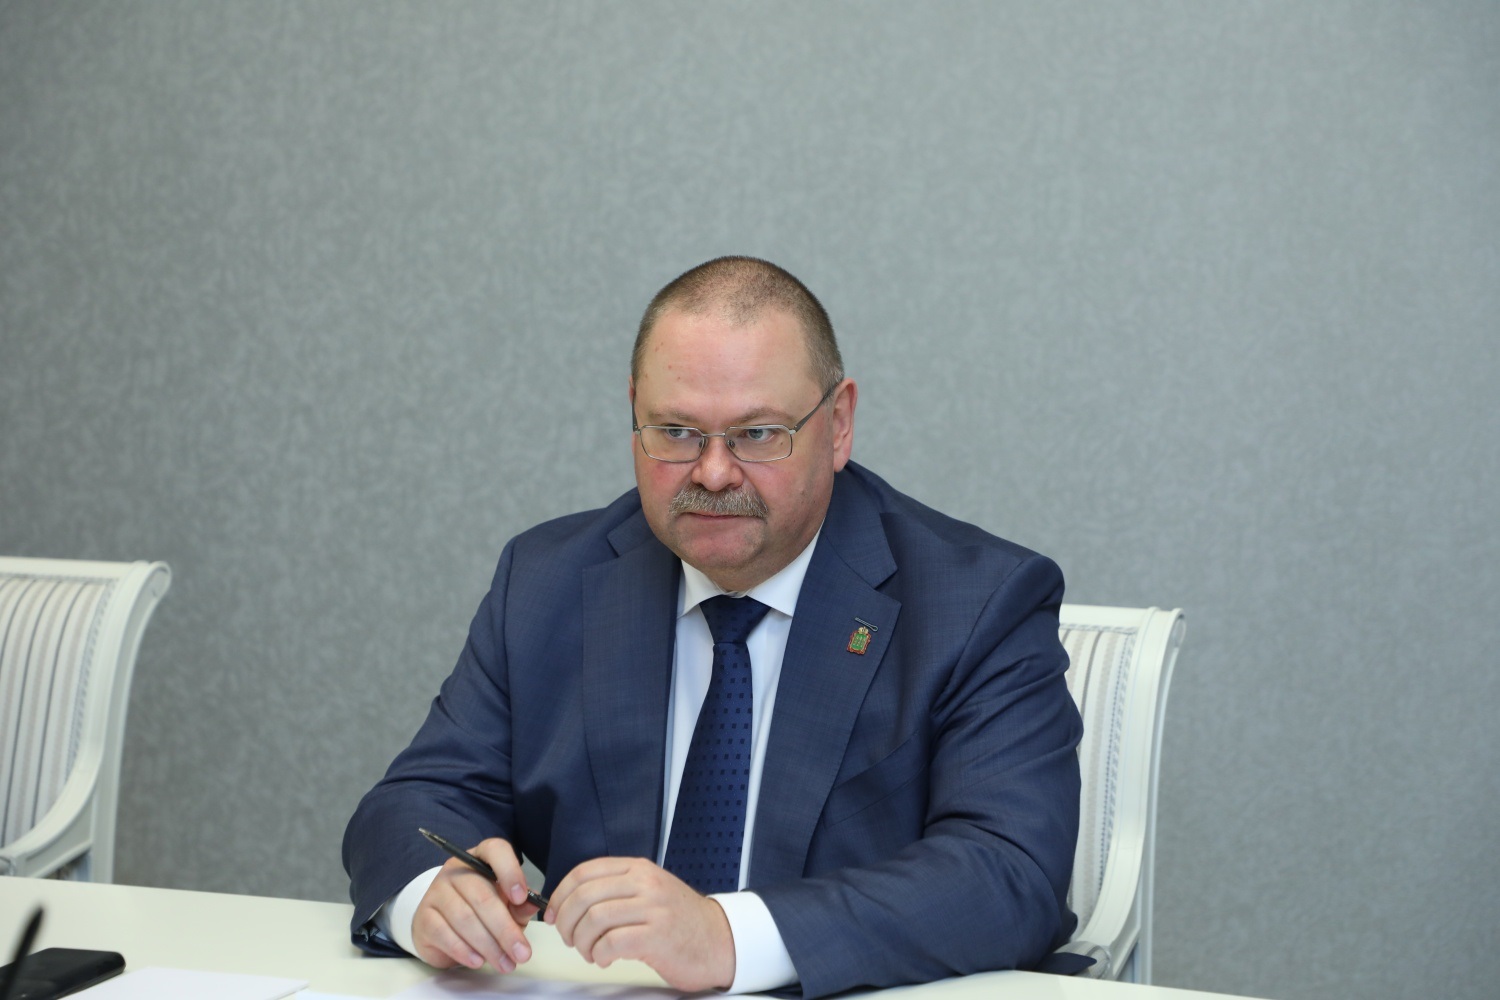 Мельниченко распорядился о включении отопления по всей территории Пензенской области 